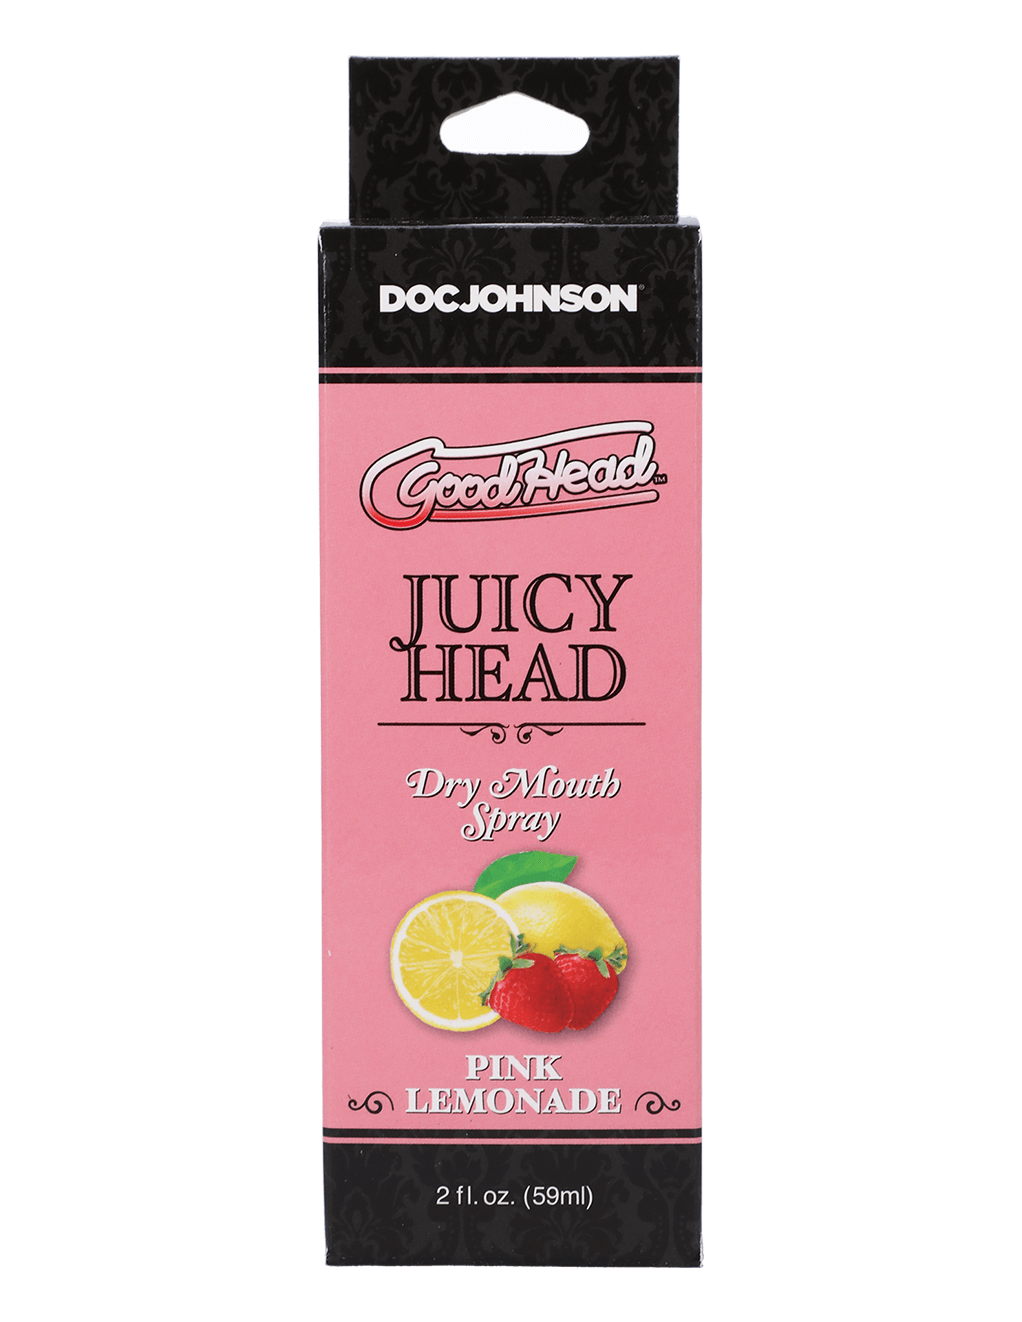 GoodHead Juicy Head - Pink Lemonade - Box